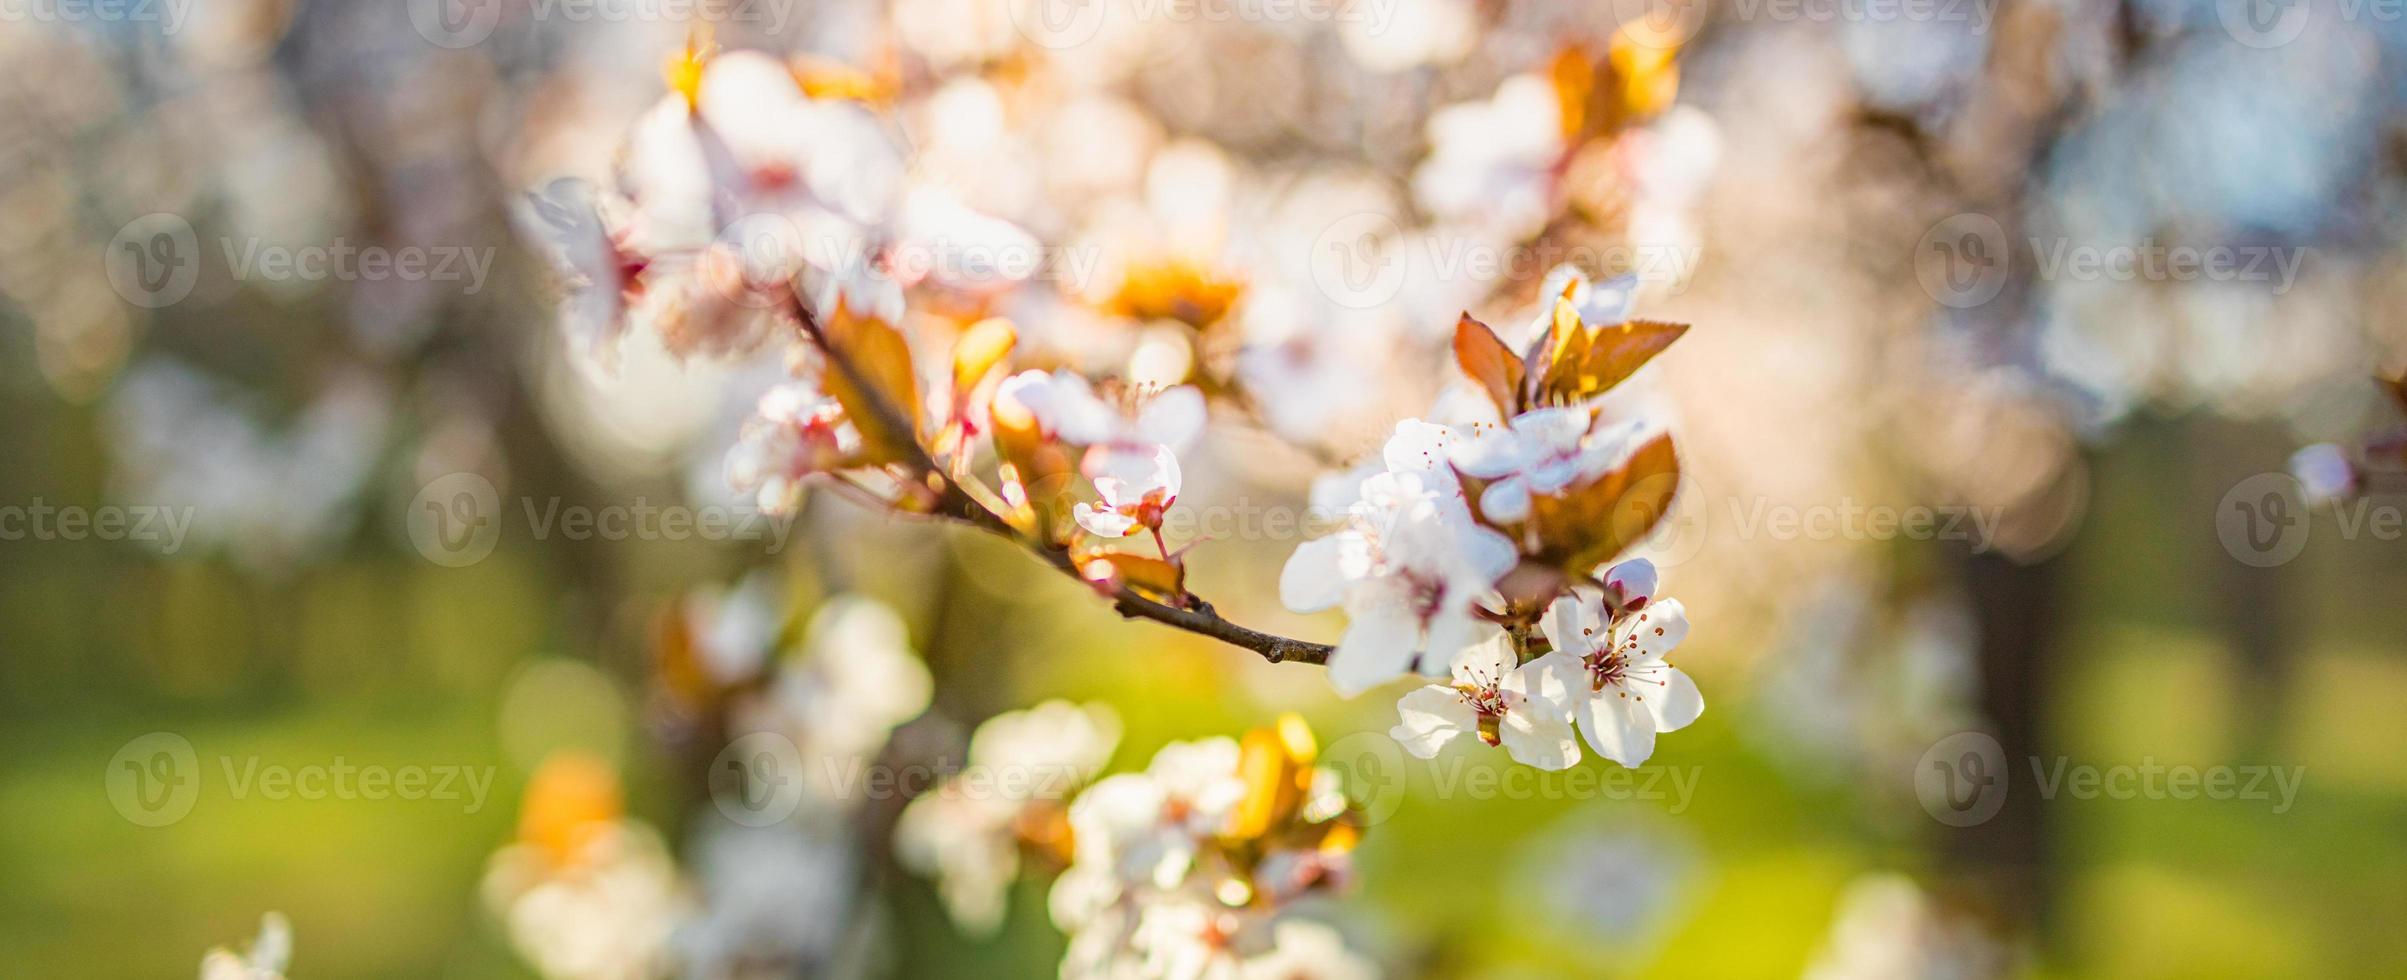 natureza incrível closeup, cerejeira desabrochando no fundo desfocado bokeh. flores de sakura rosa, natureza romântica sonhadora colorida incrível. amo design de banner floral foto